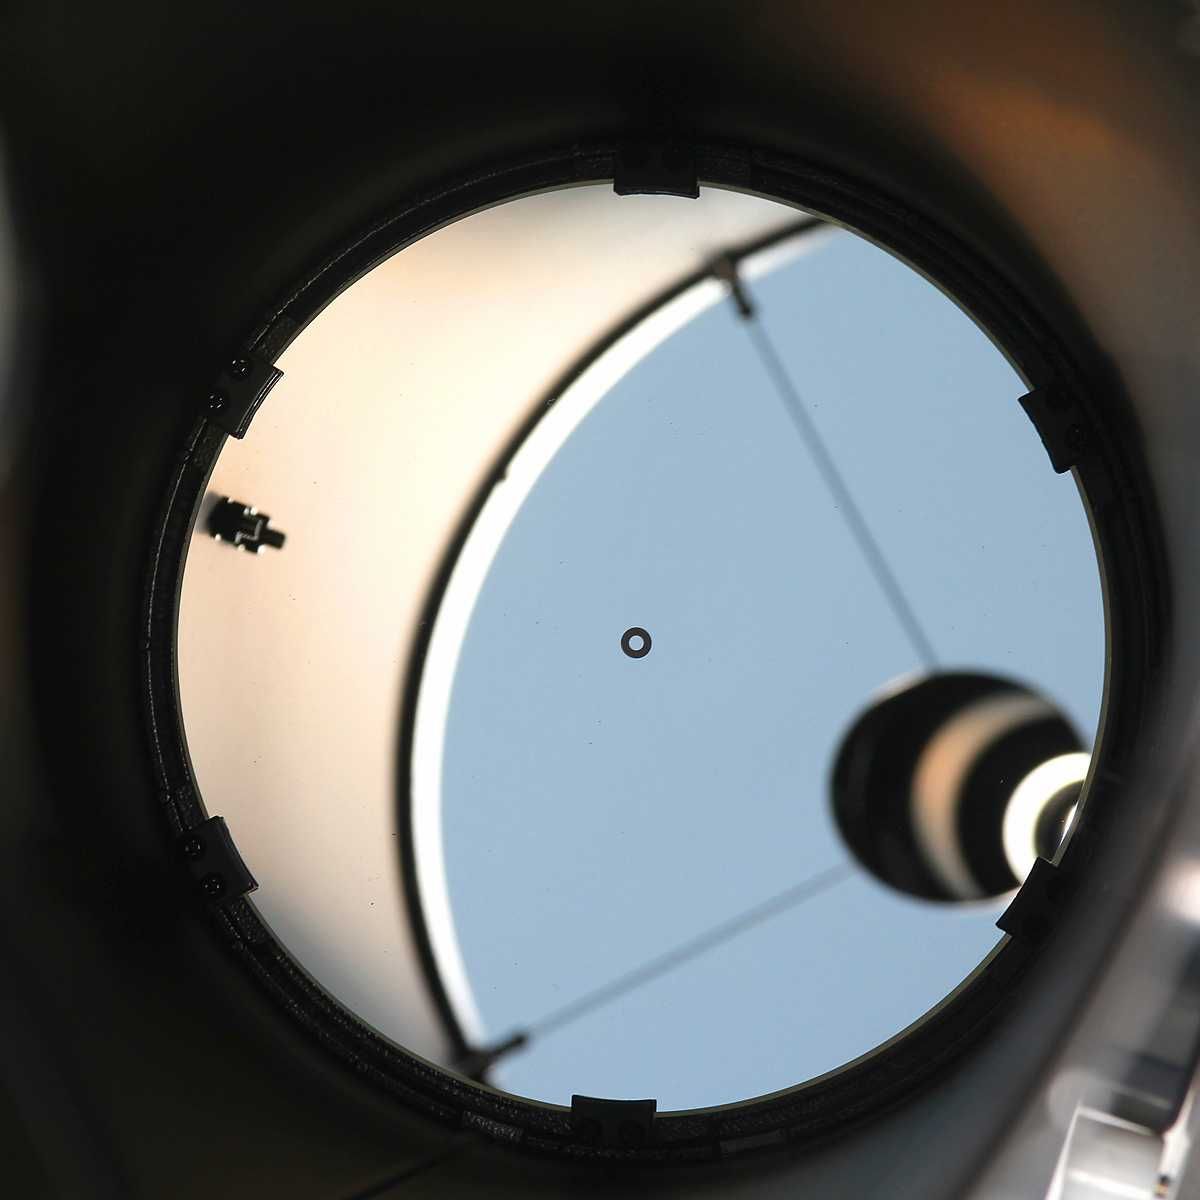 Telescop SkyWatcher Dobson 8